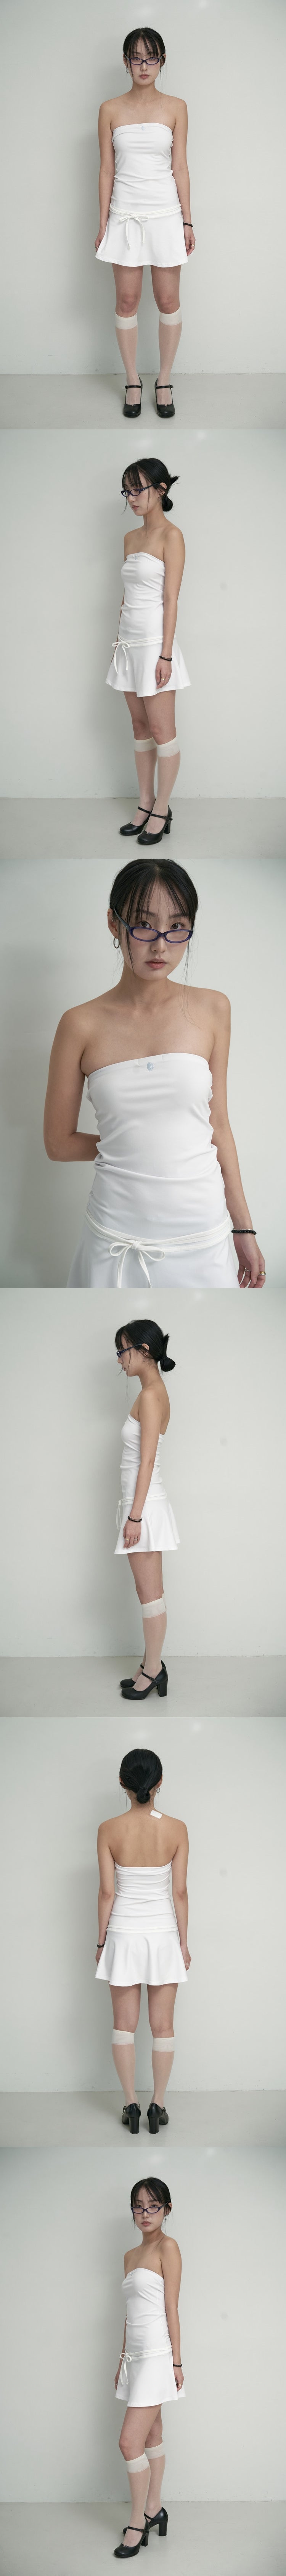 Tube top ribbon mini dress - white